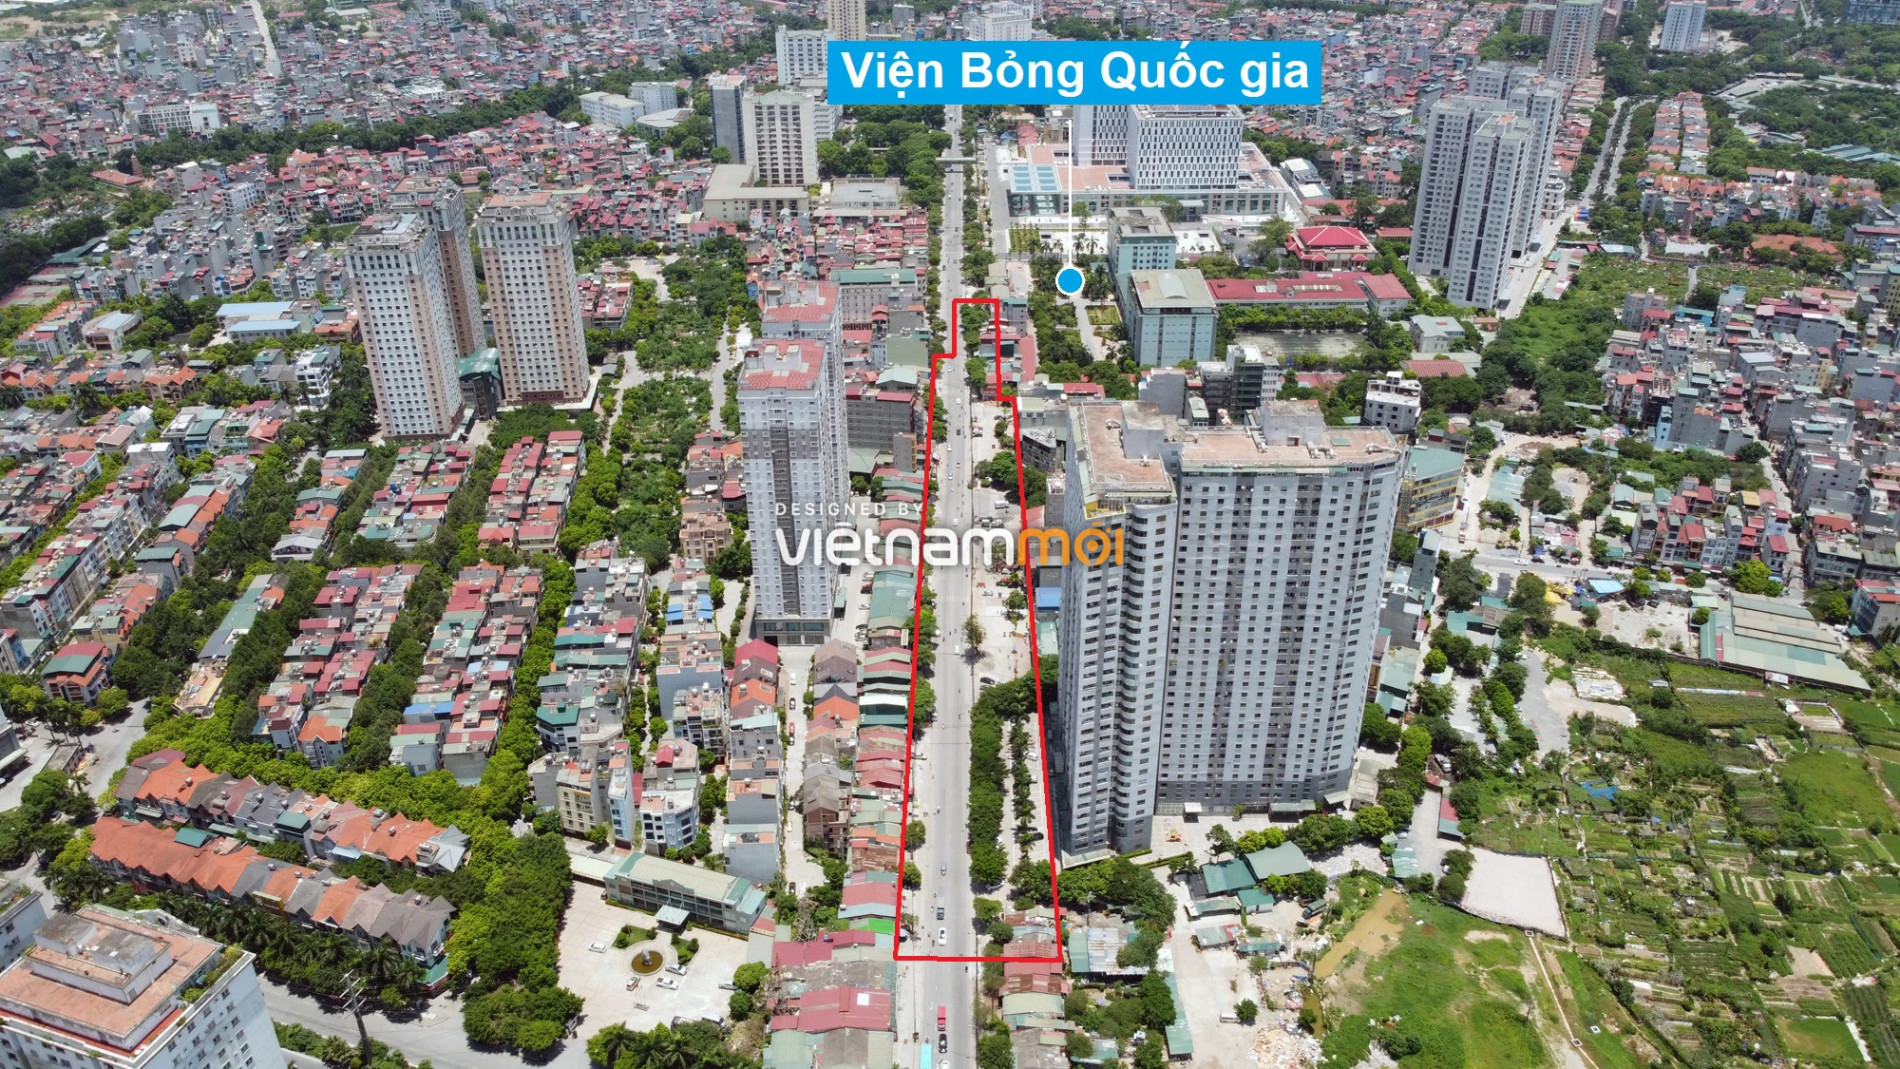 Những khu đất sắp thu hồi để mở đường ở xã Tân Triều, Thanh Trì, Hà Nội (phần 11) - Ảnh 6.